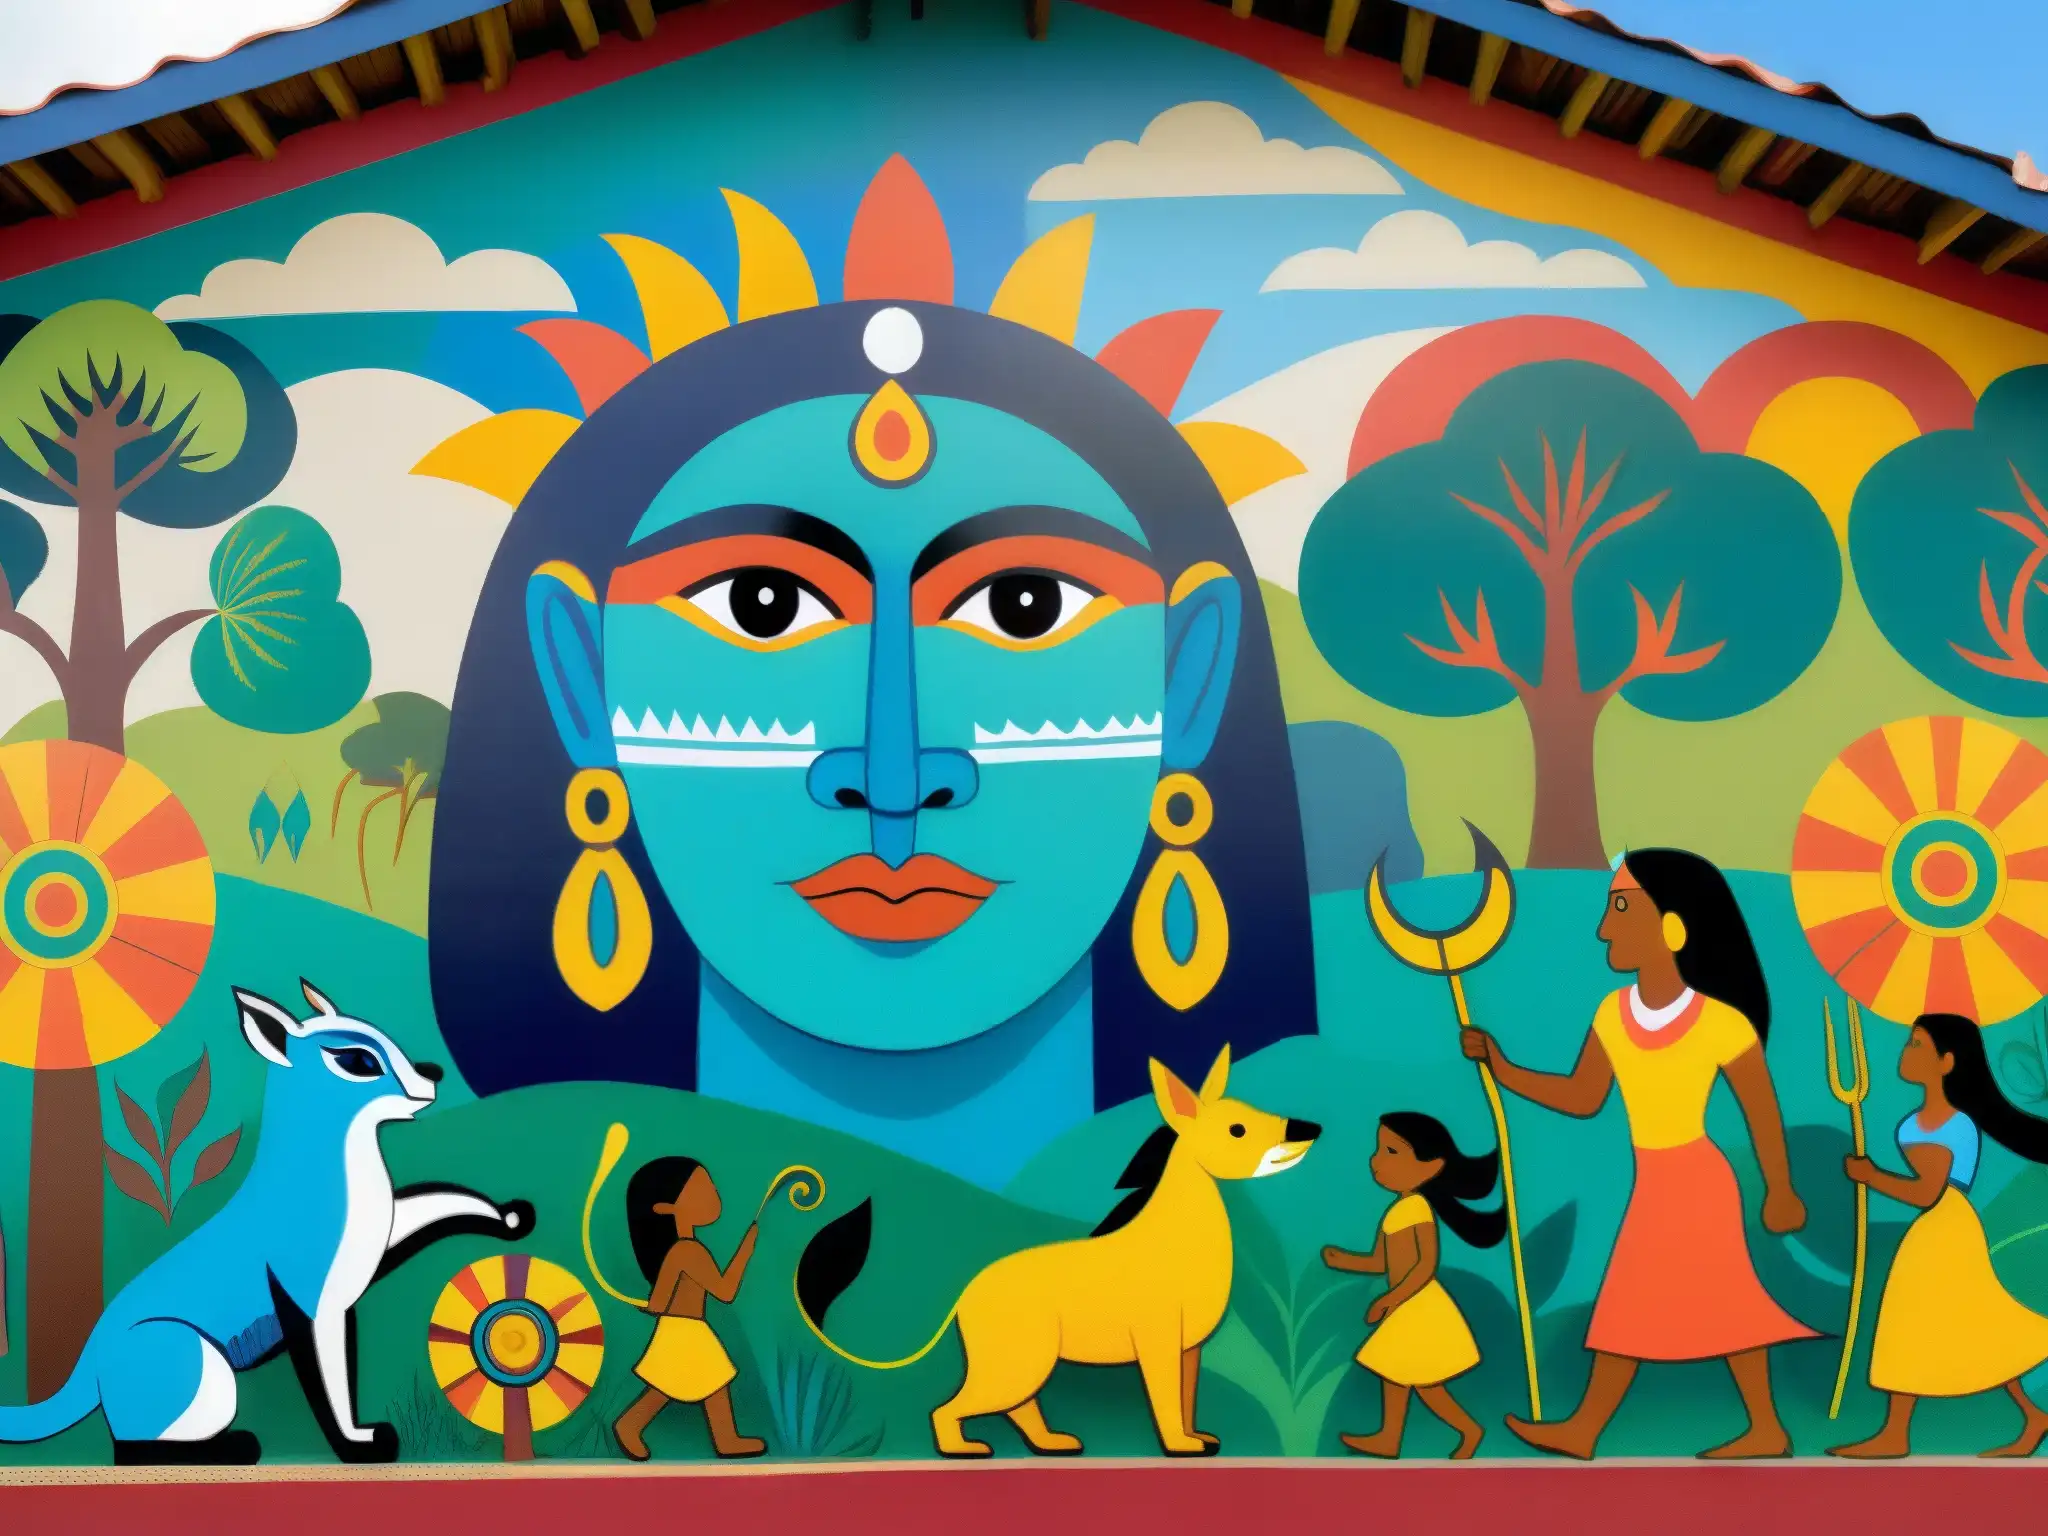 Colorido mural de la mitología guaraní, muestra la creación con dioses y criaturas míticas